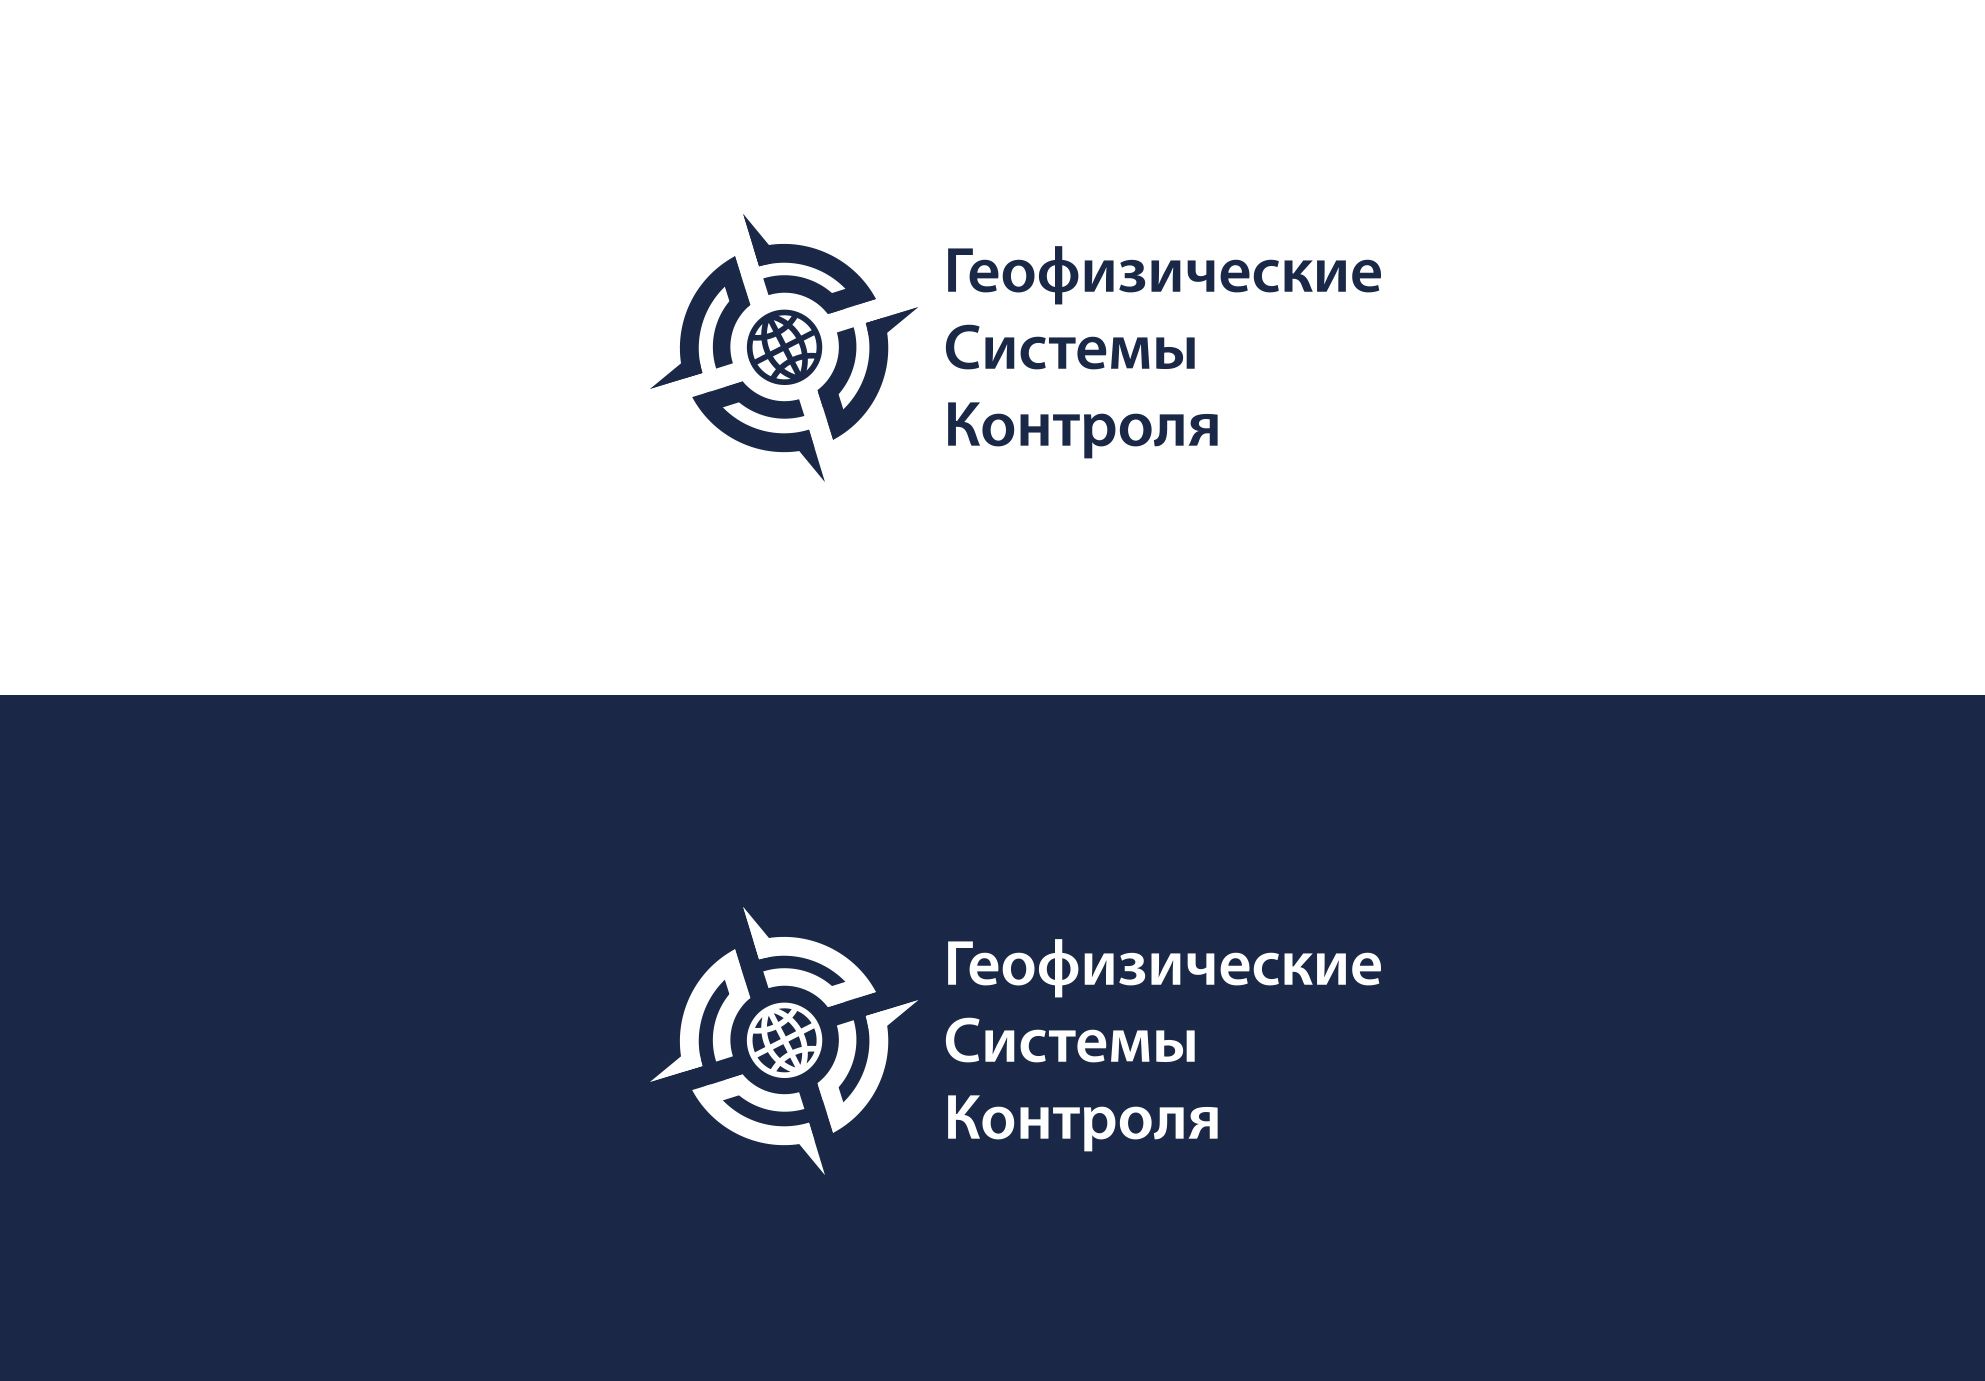 Лого и фирменный стиль для ЗАО 